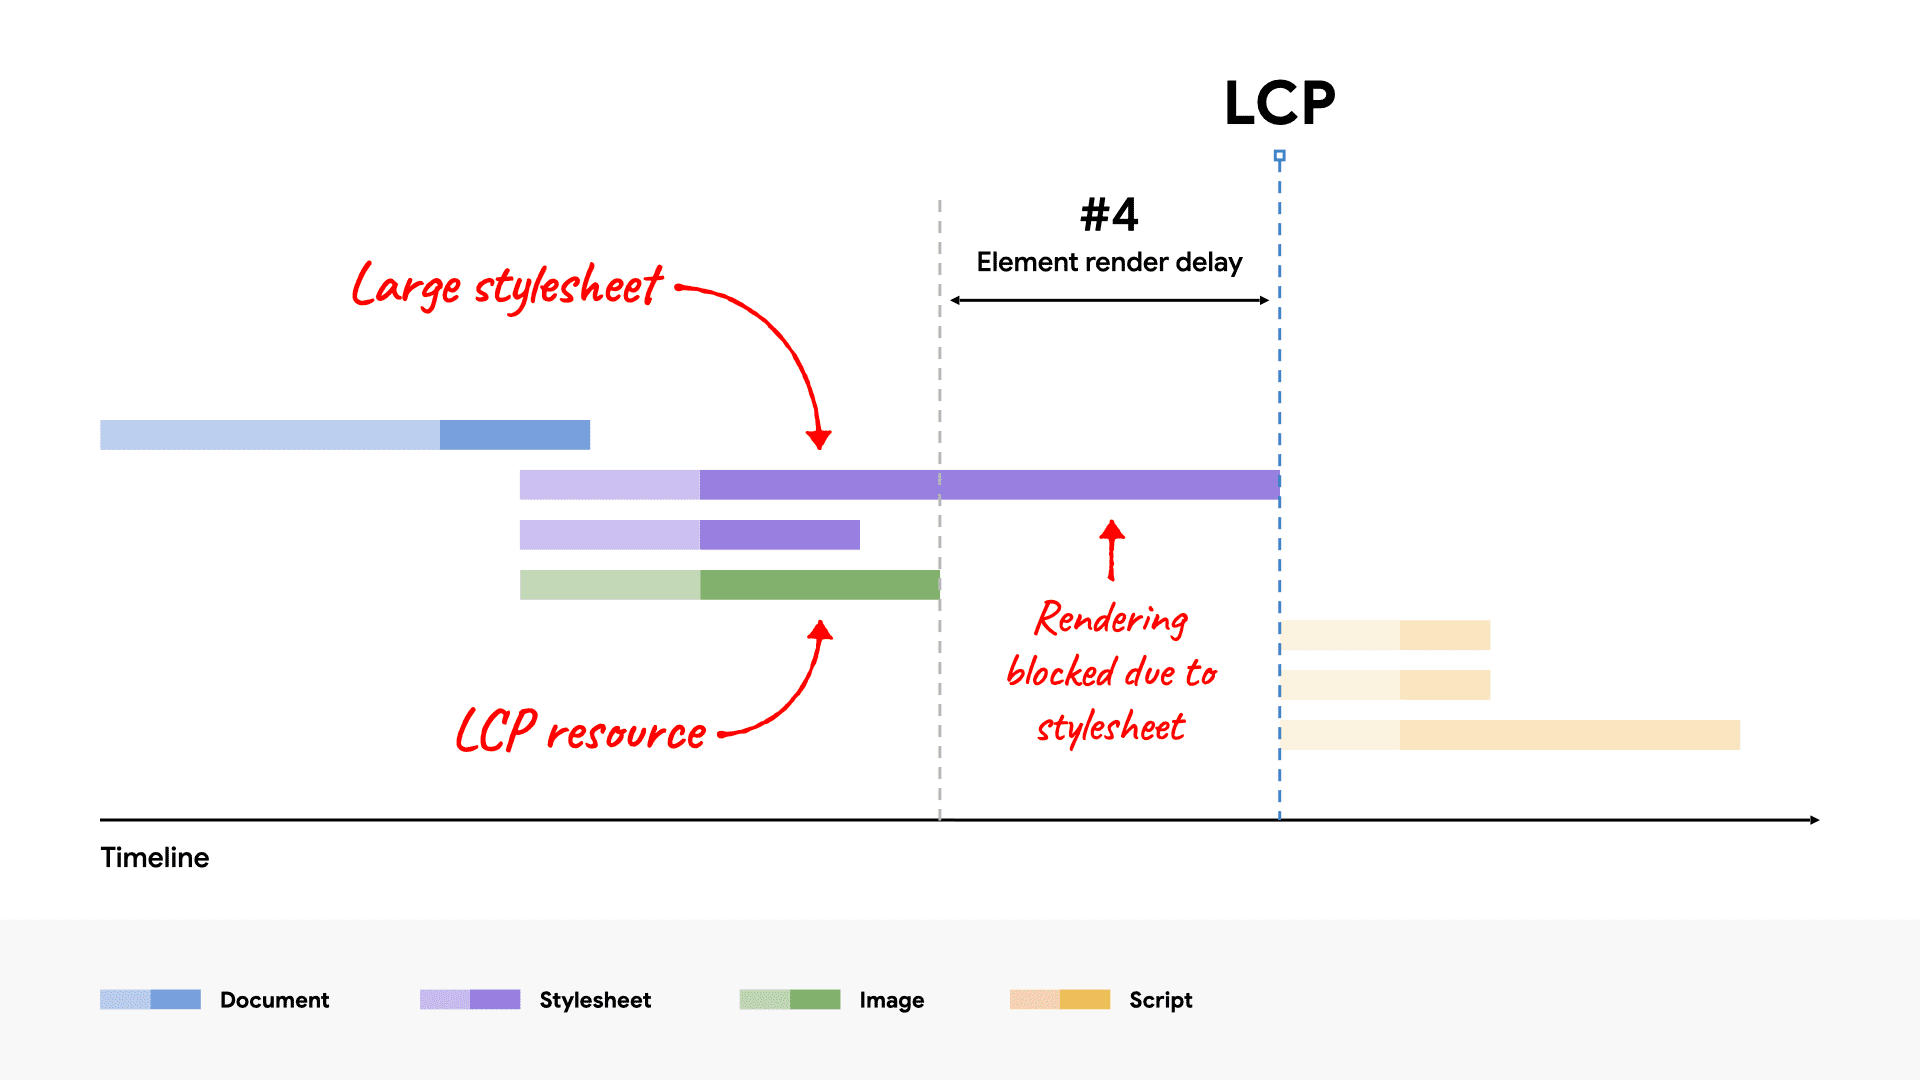 একটি নেটওয়ার্ক জলপ্রপাত ডায়াগ্রামে একটি বড় CSS ফাইল দেখানো হচ্ছে LCP উপাদানের রেন্ডারিং ব্লক করা কারণ এটি LCP রিসোর্সের চেয়ে লোড হতে বেশি সময় নেয়